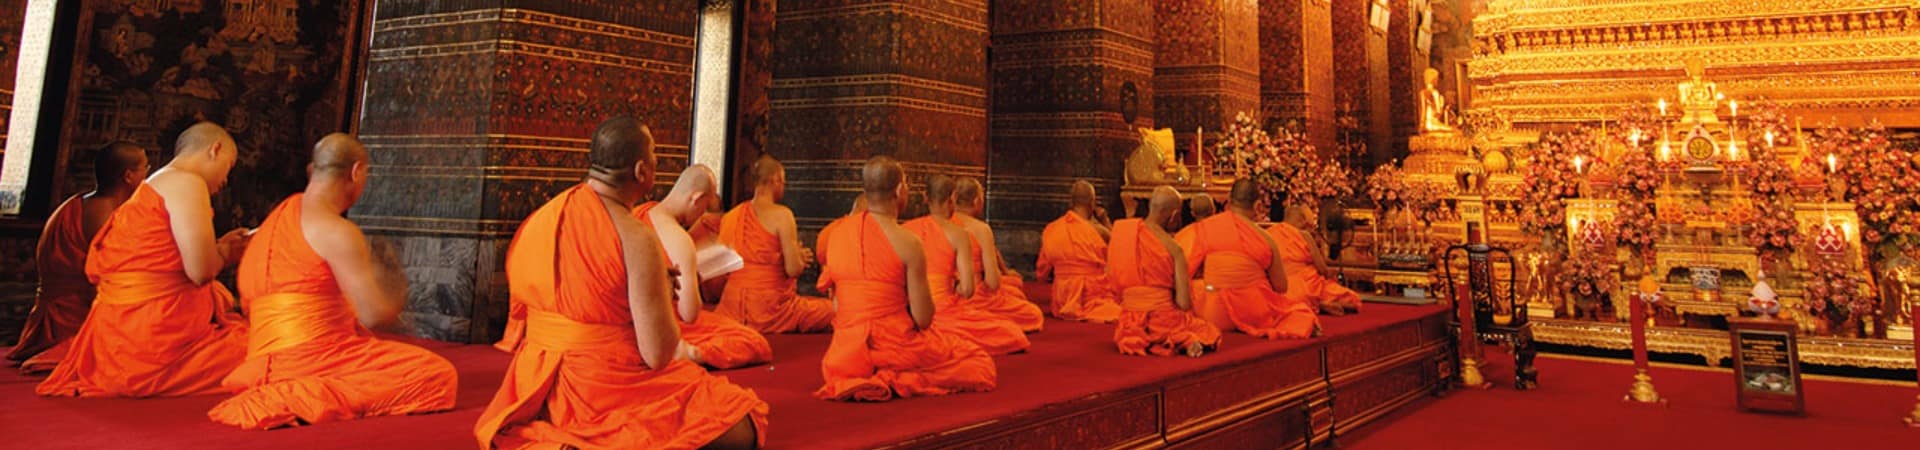 Monges wat pho temple bangkok